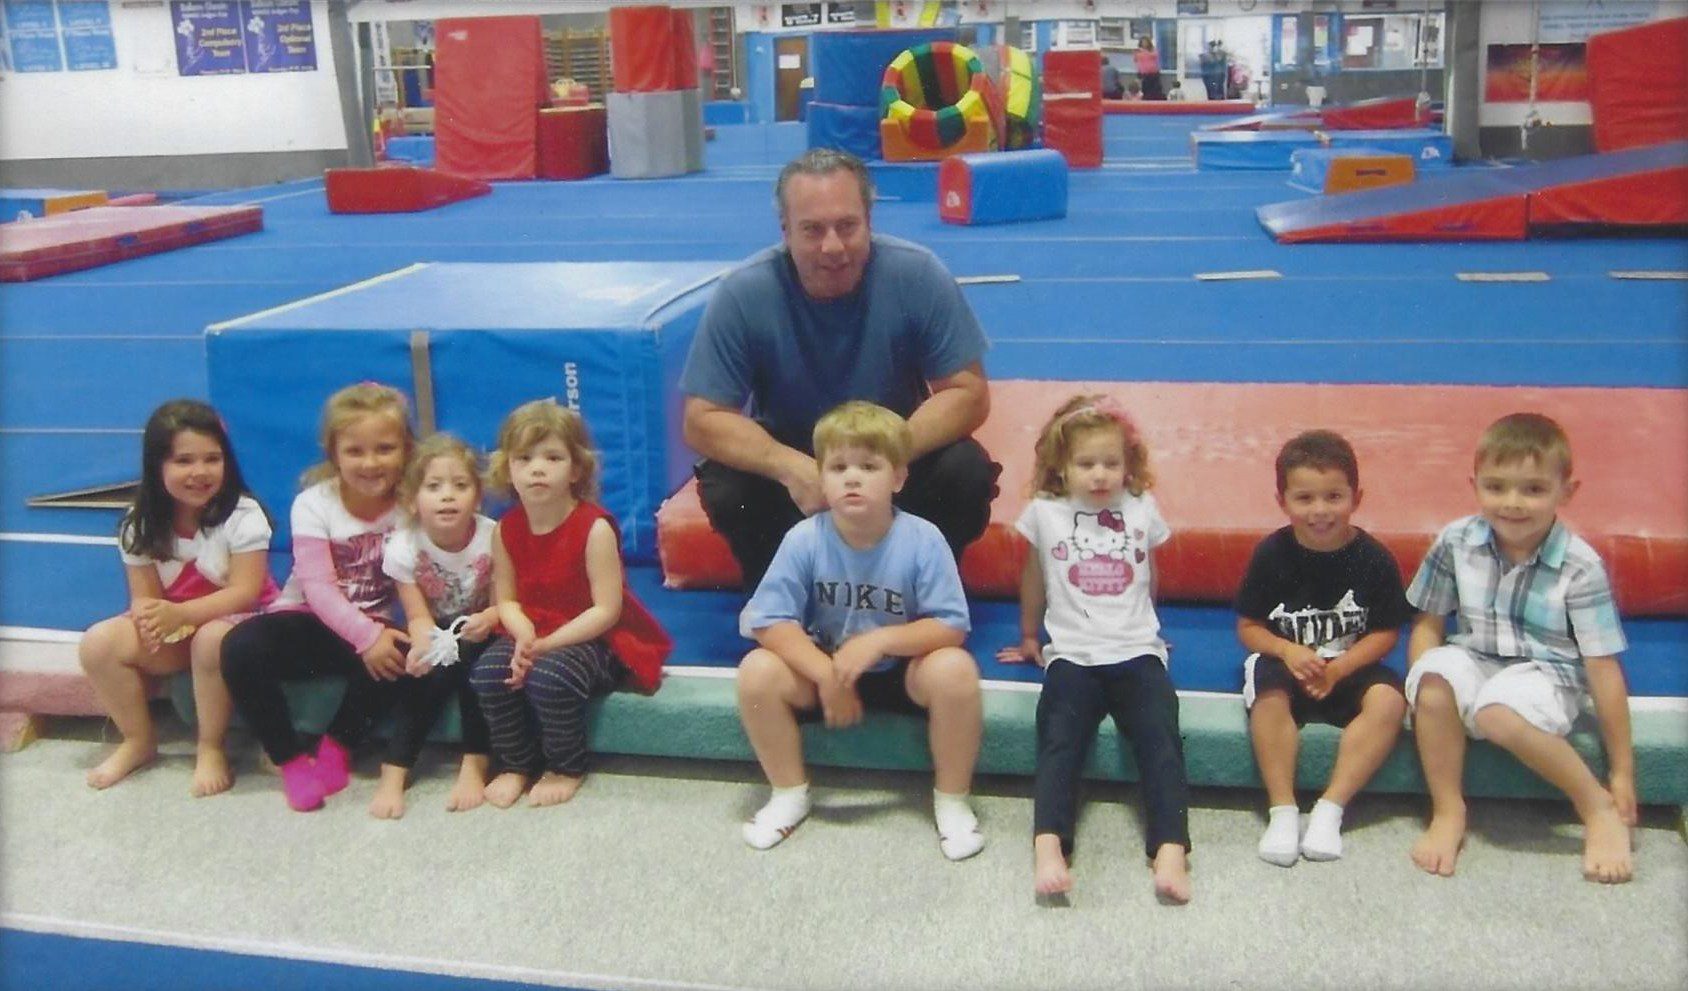 A Small Preschool Gymnastics Group Coached by Tom Brophy at Dynamic Gymnastics